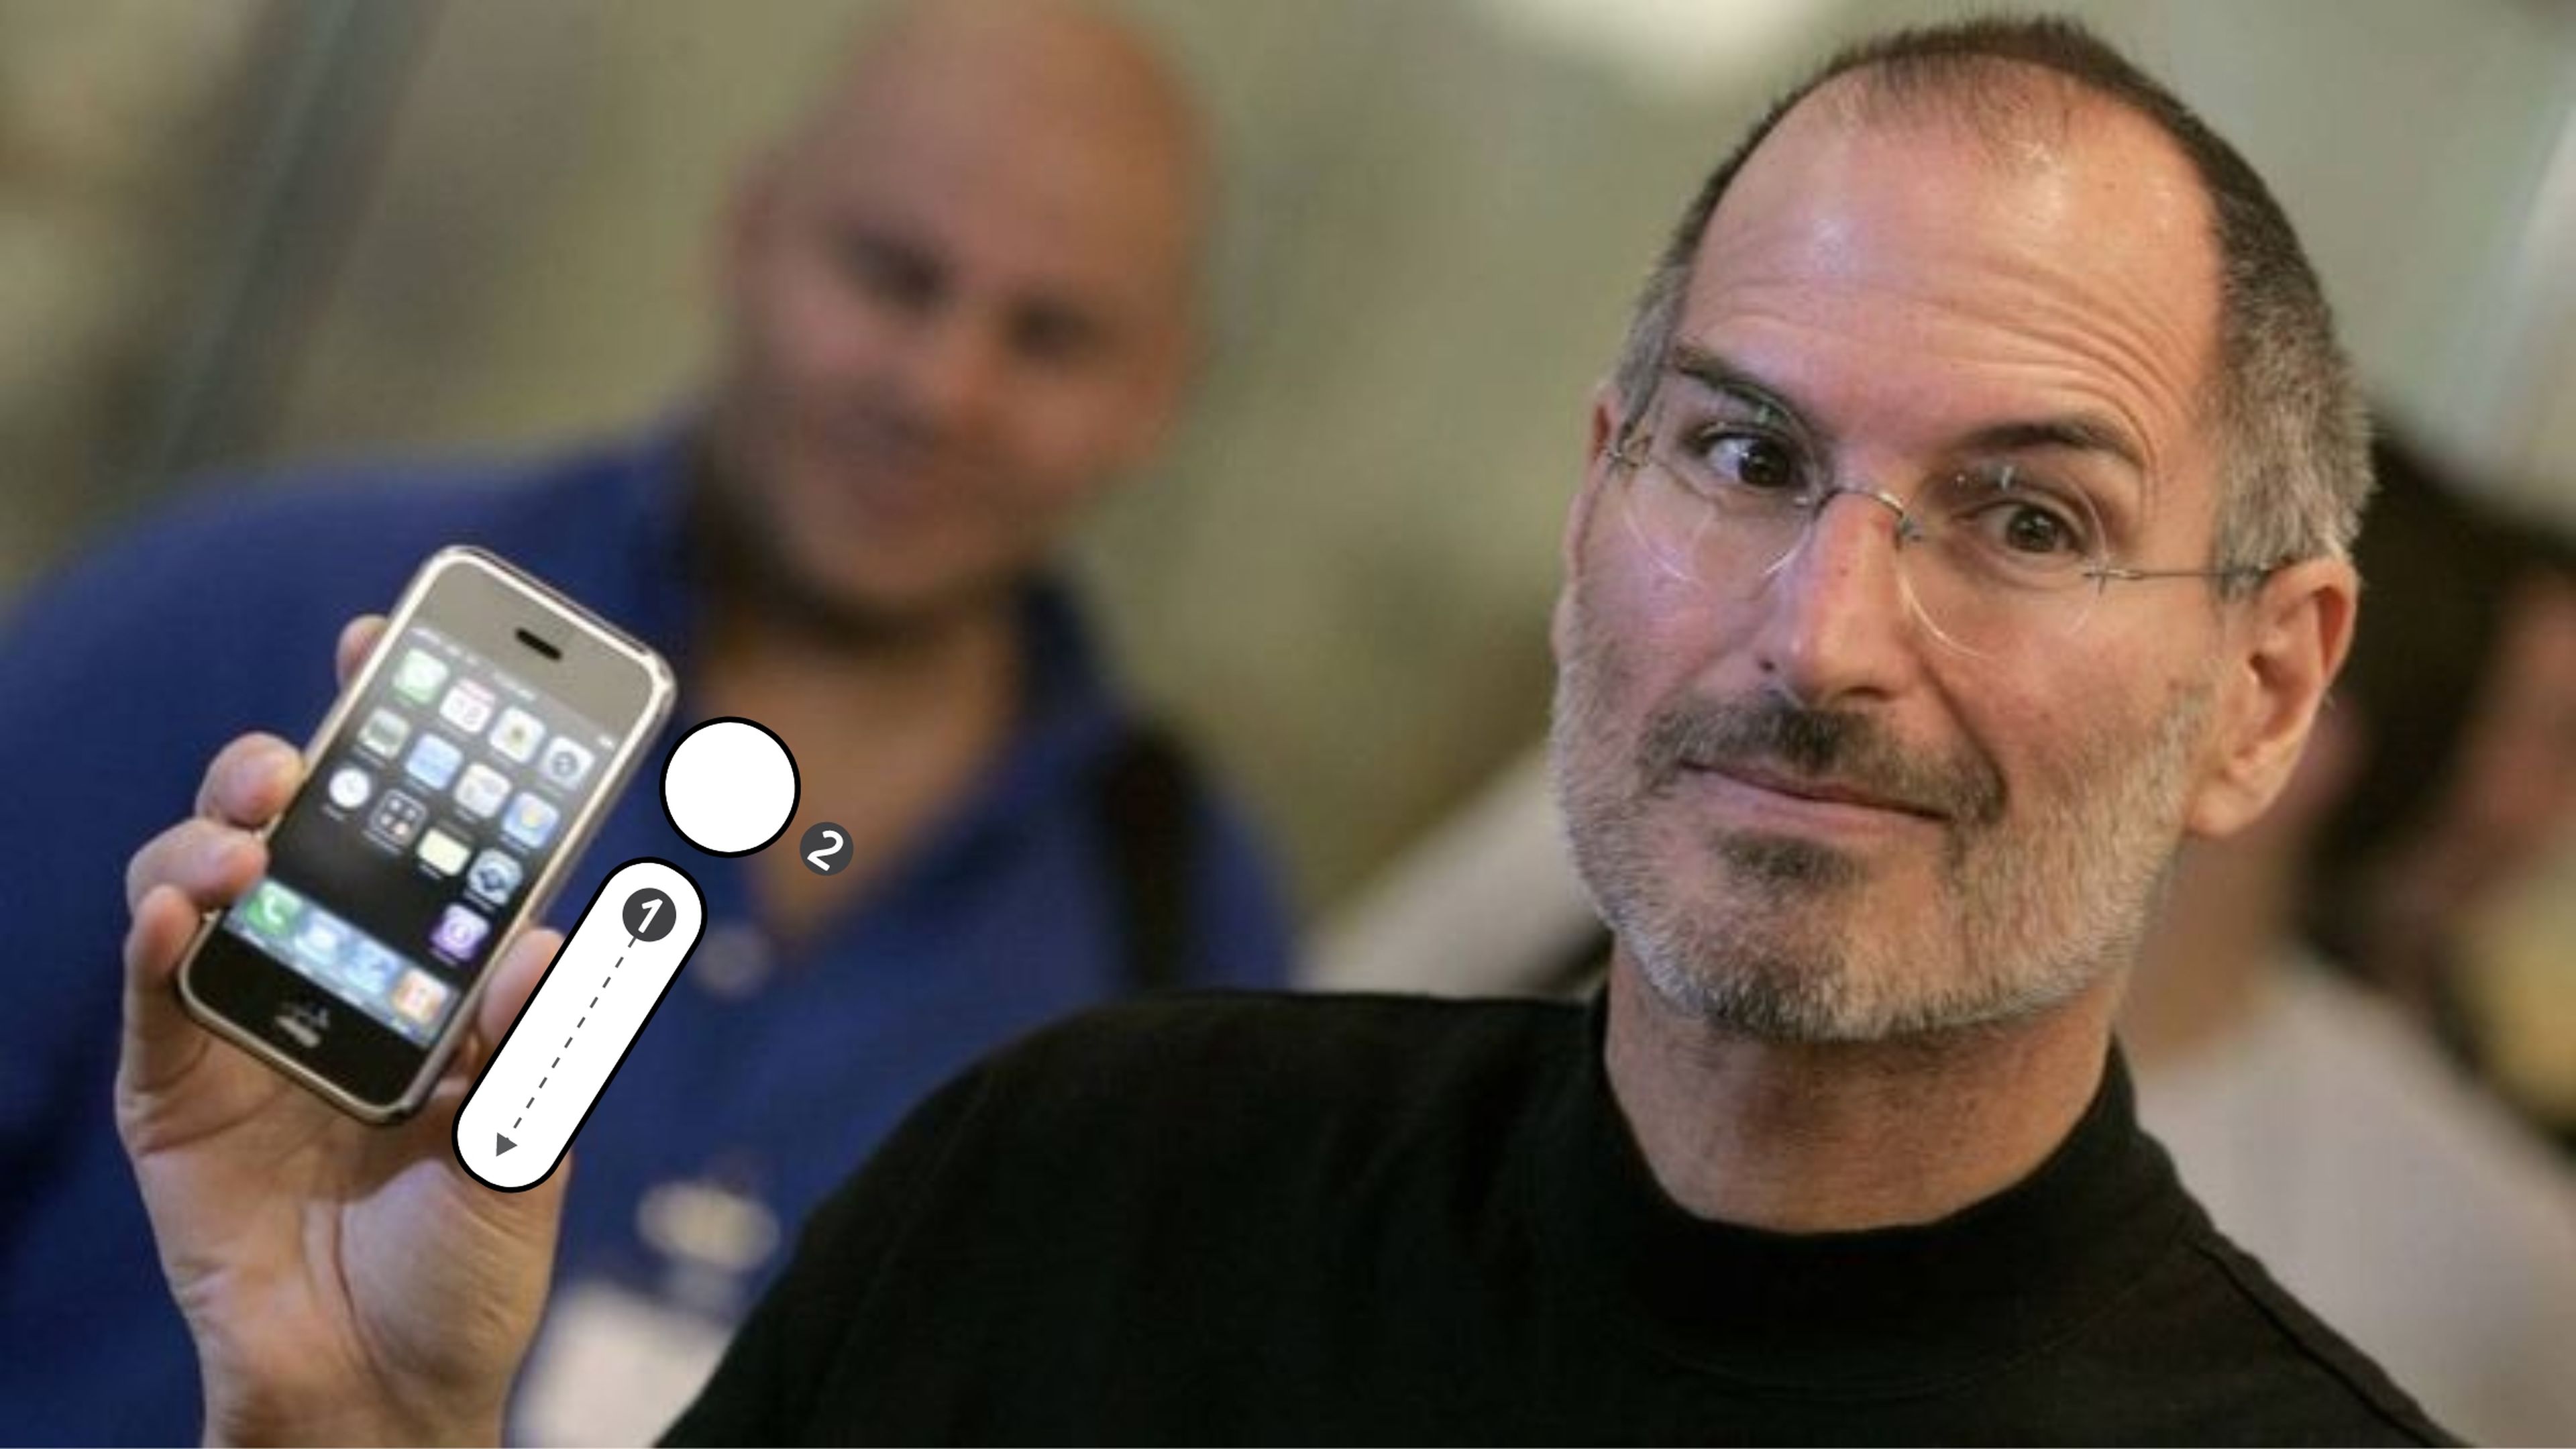 Steve Jobs desveló una vez su secreto mejor guardado: ¿qué significaba para él la "i" de iPhone?